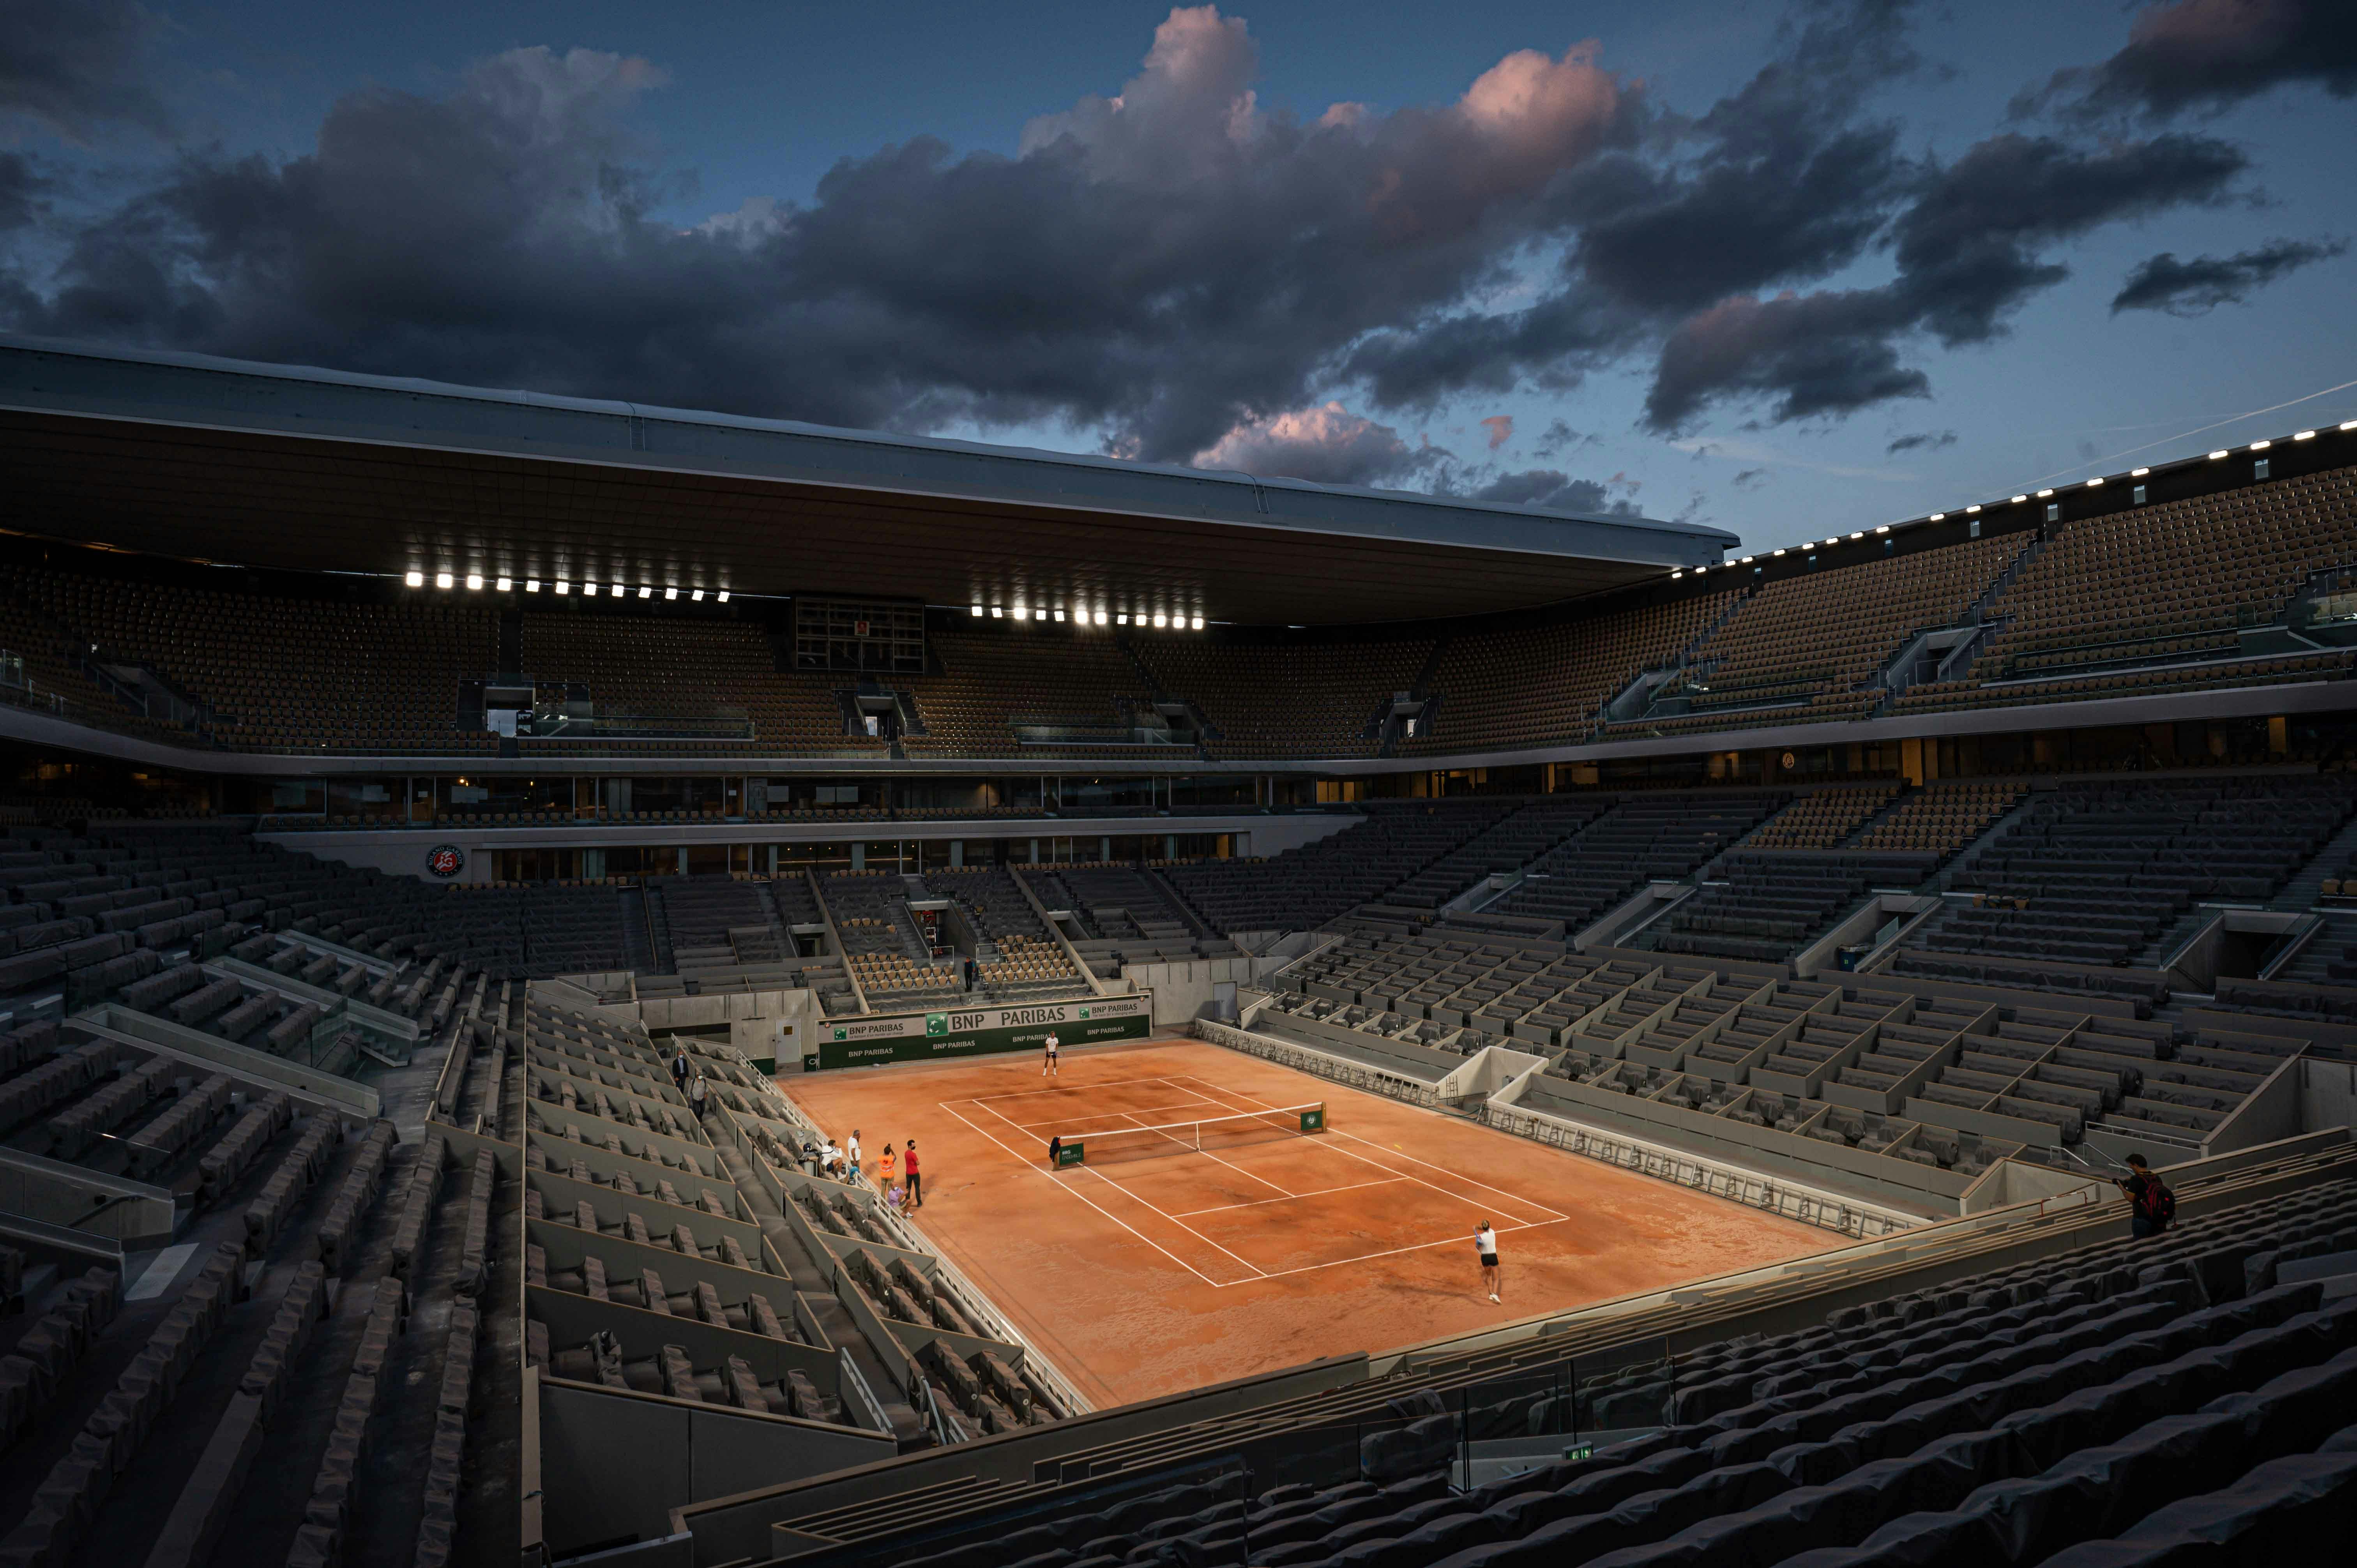 PHOTO GALLERY: visit the new Roland-Garros stadium! - Roland-Garros ...